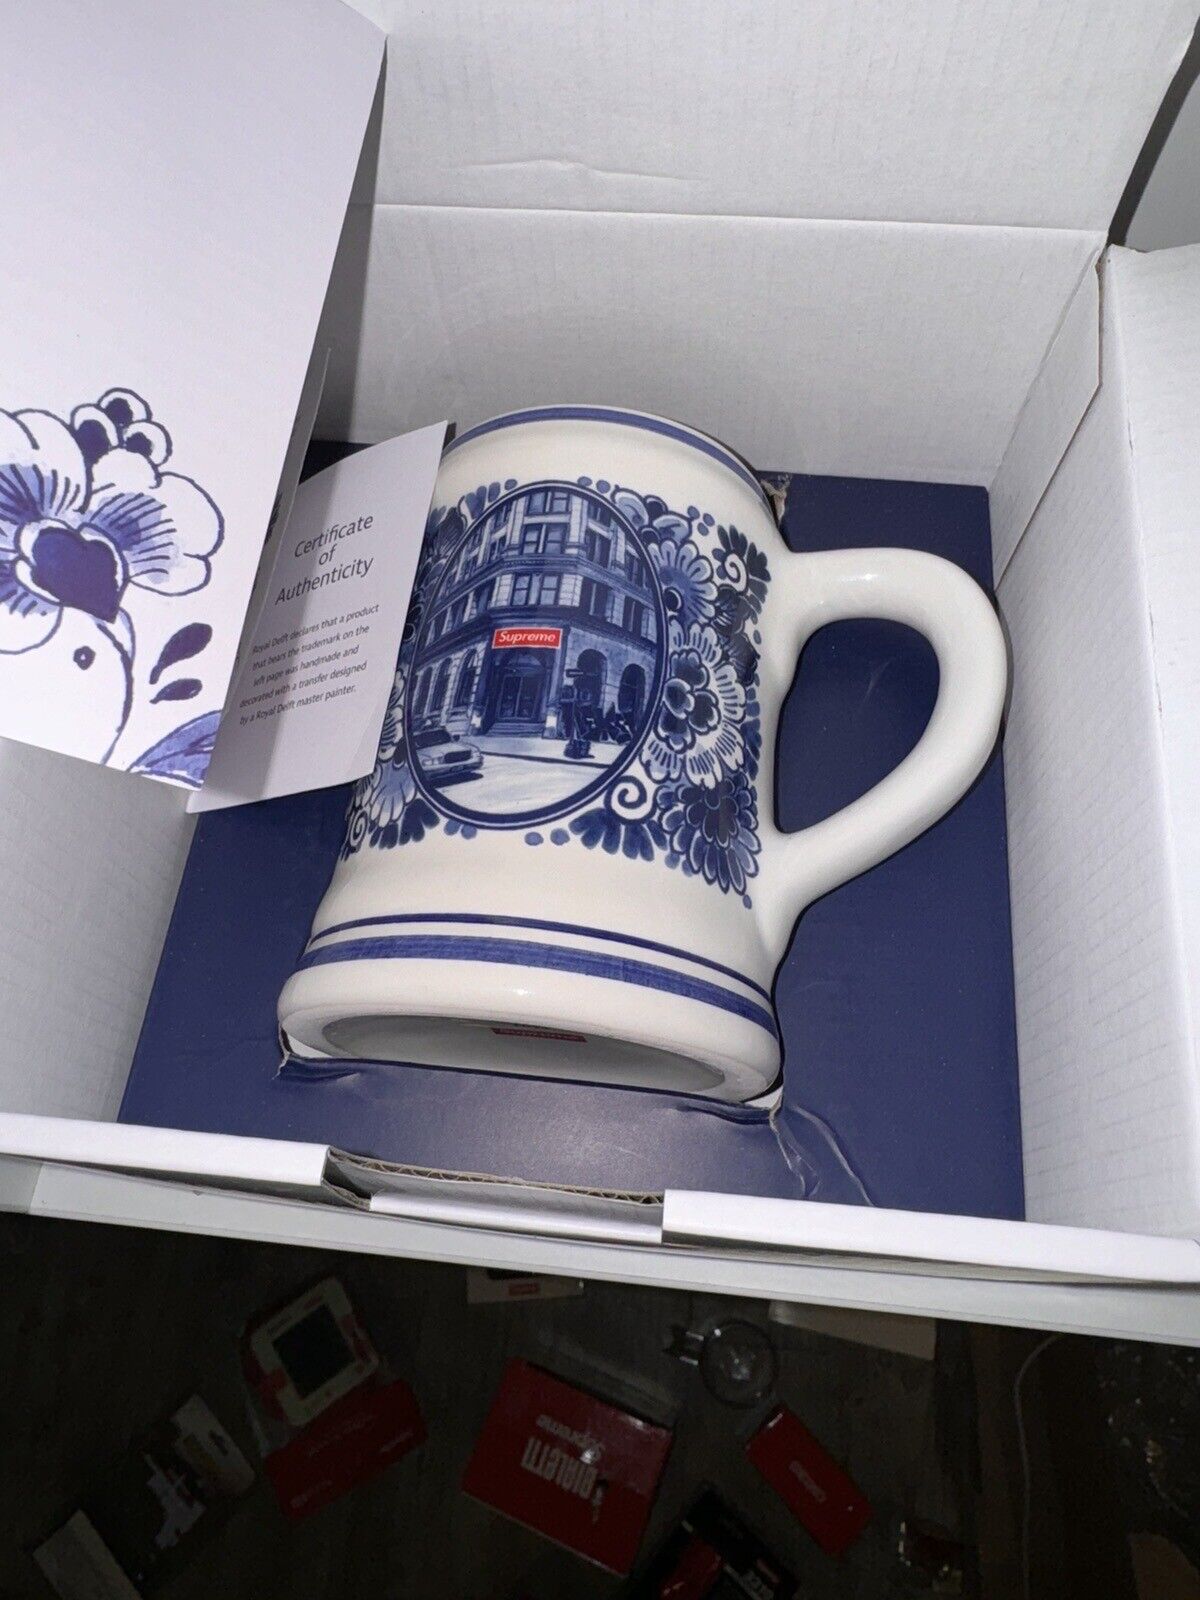 Supreme x Royal Delft 190 Bowery Beer Mug Brand New Never Used